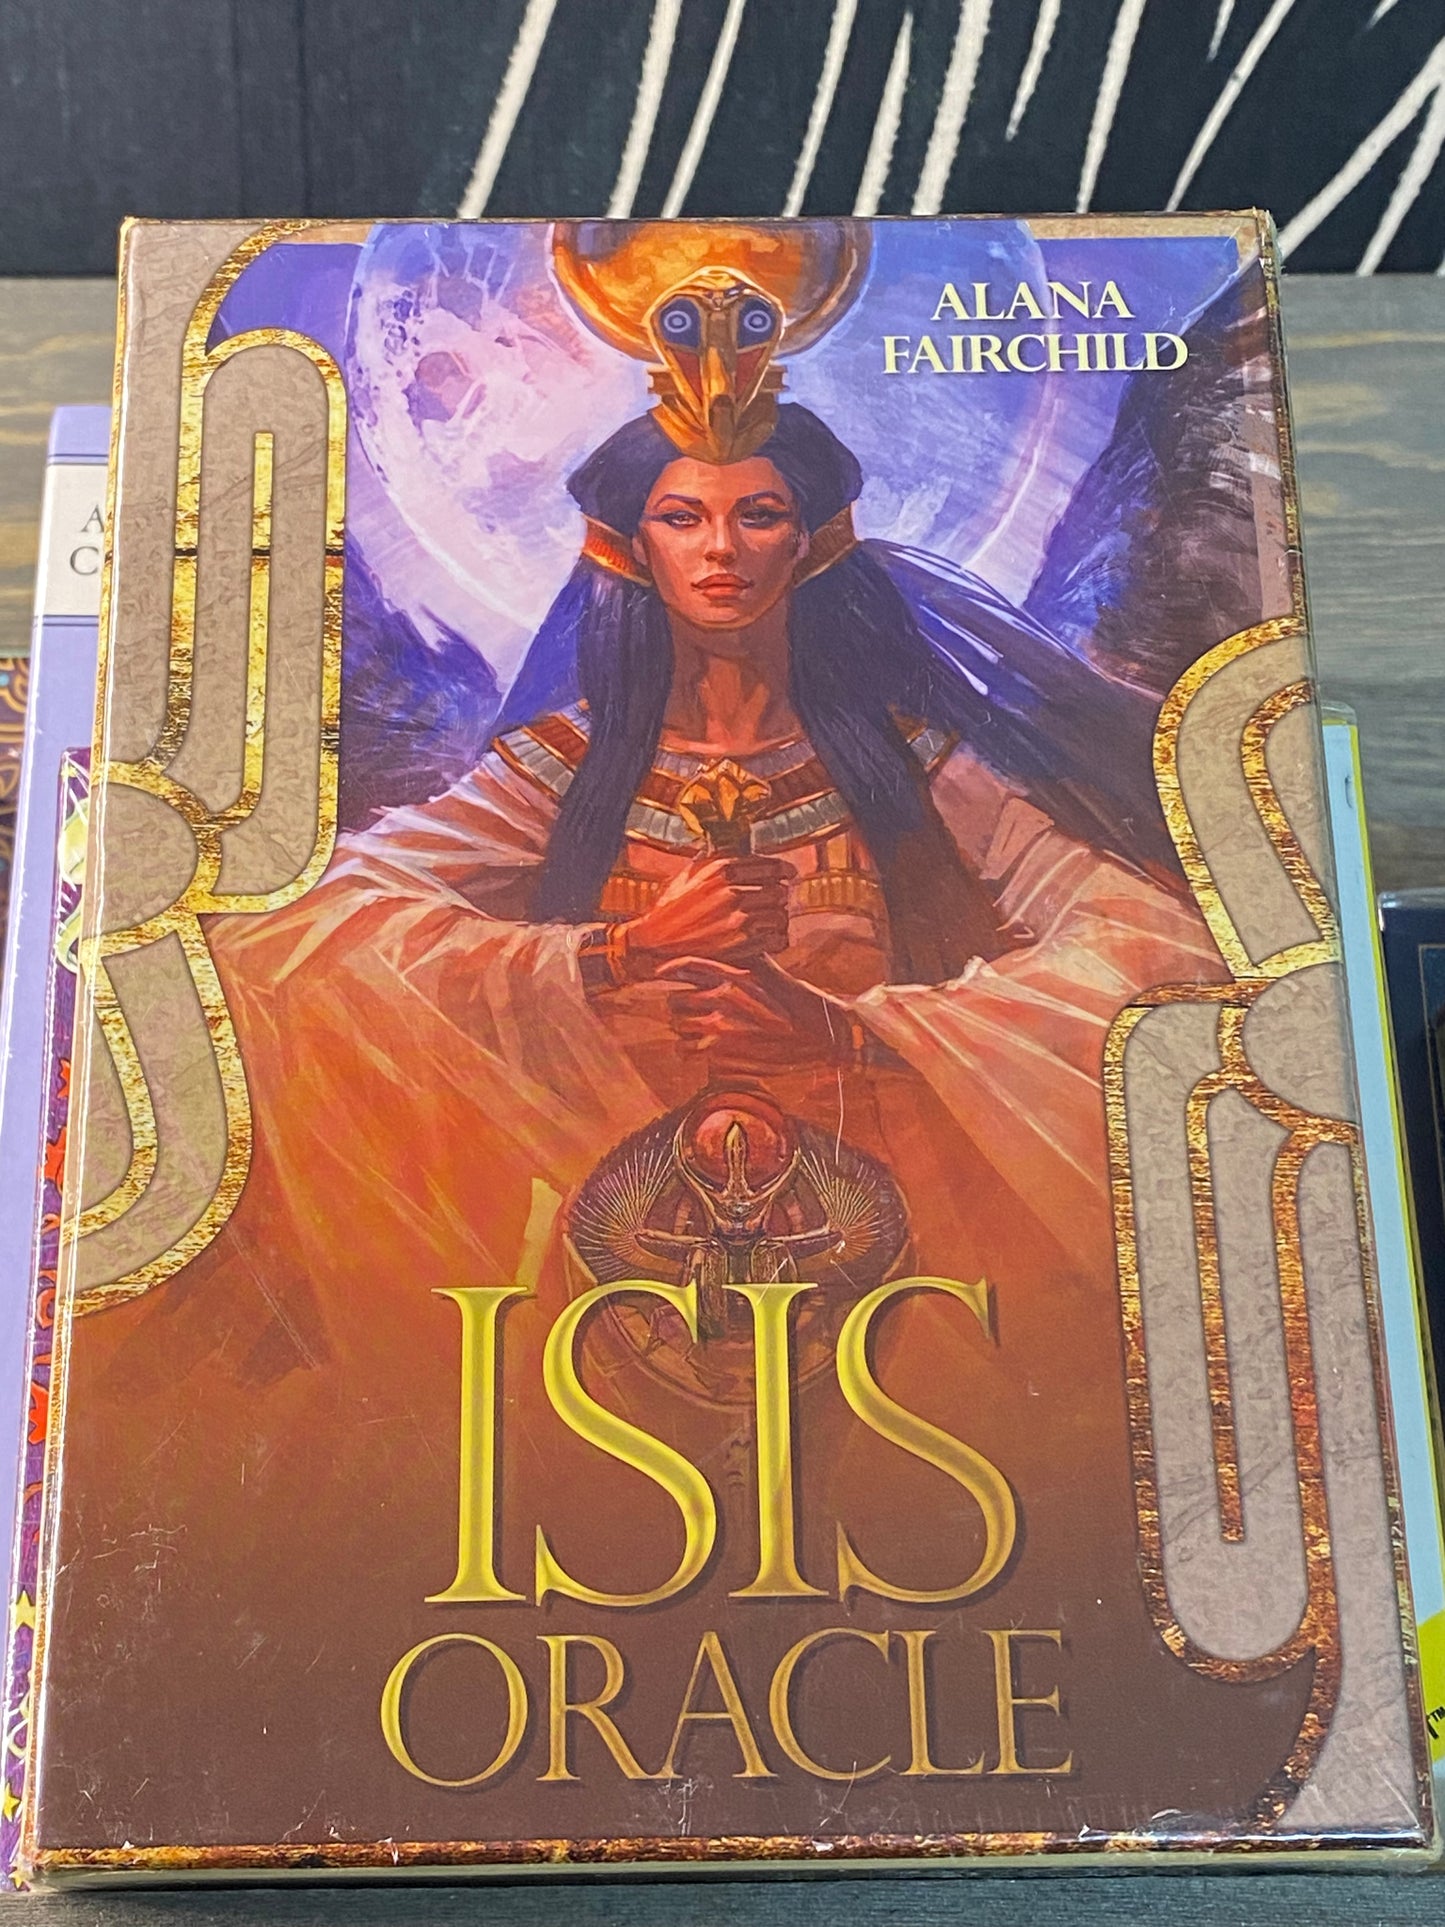 Isis Oracle Deck